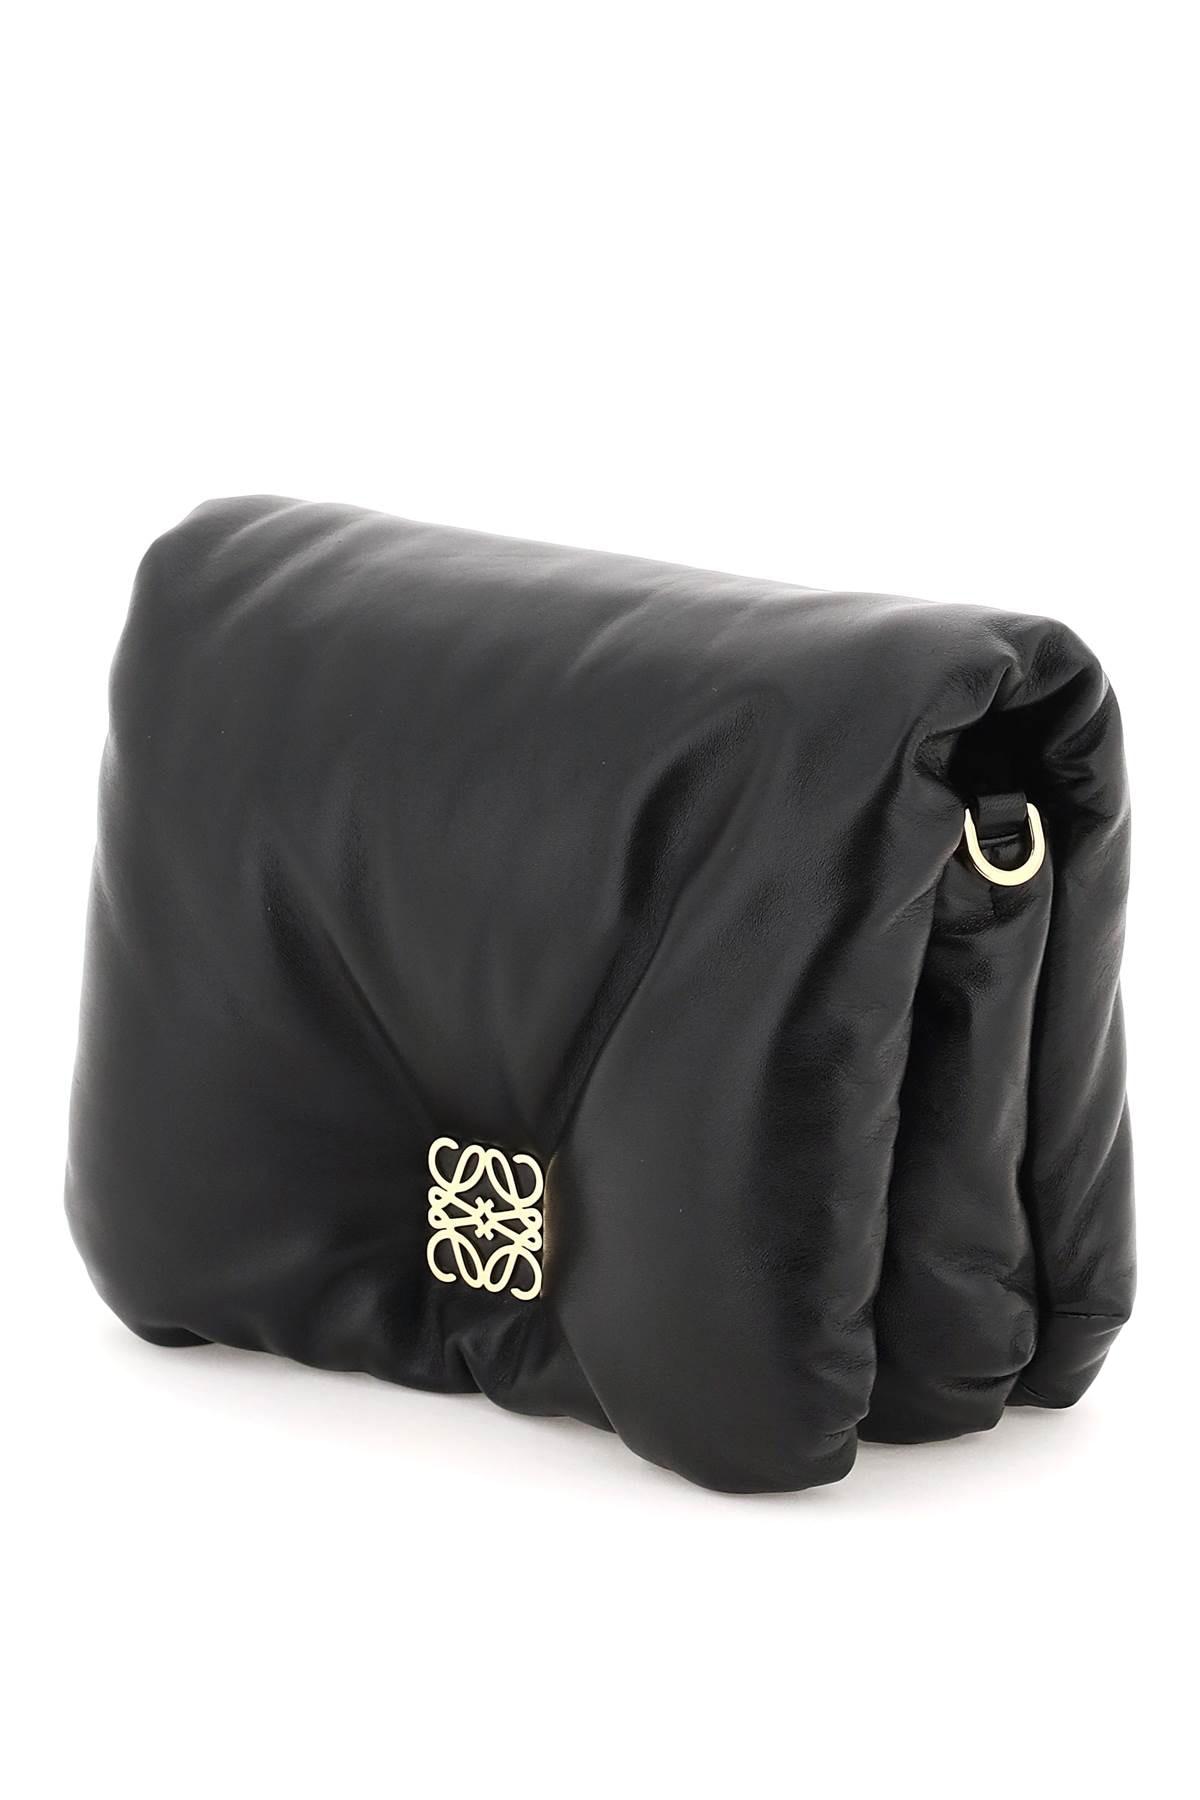 Loewe Goya Puffer Shoulder Bag in Black